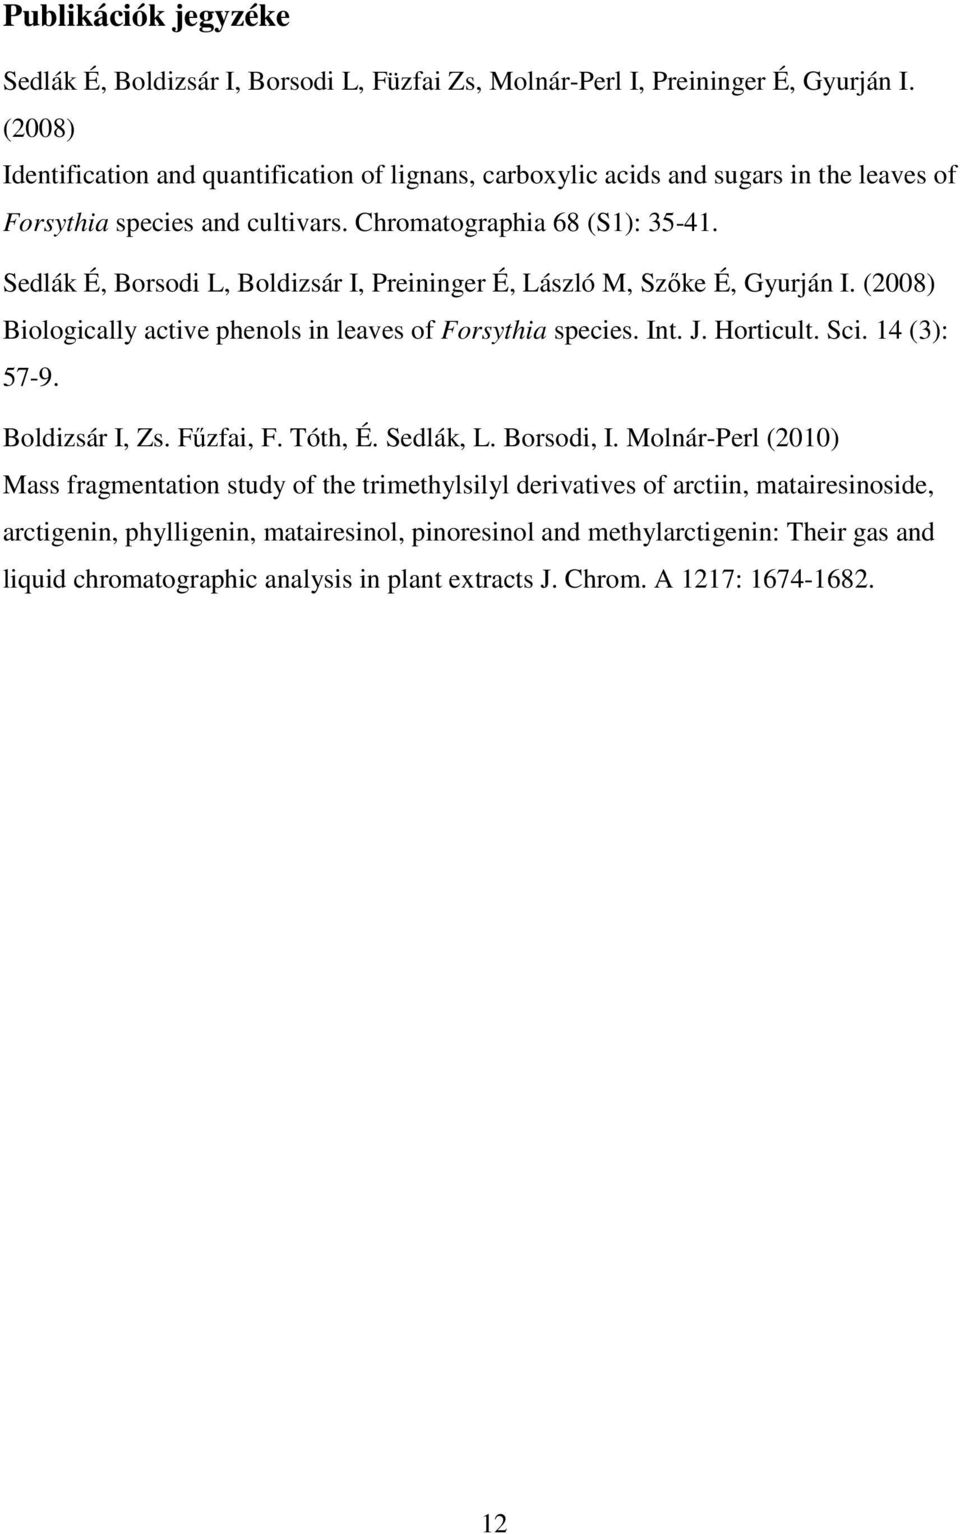 Sedlák É, Borsodi L, Boldizsár I, Preininger É, László M, Szőke É, Gyurján I. (2008) Biologically active phenols in leaves of Forsythia species. Int. J. Horticult. Sci. 14 (3): 57-9.